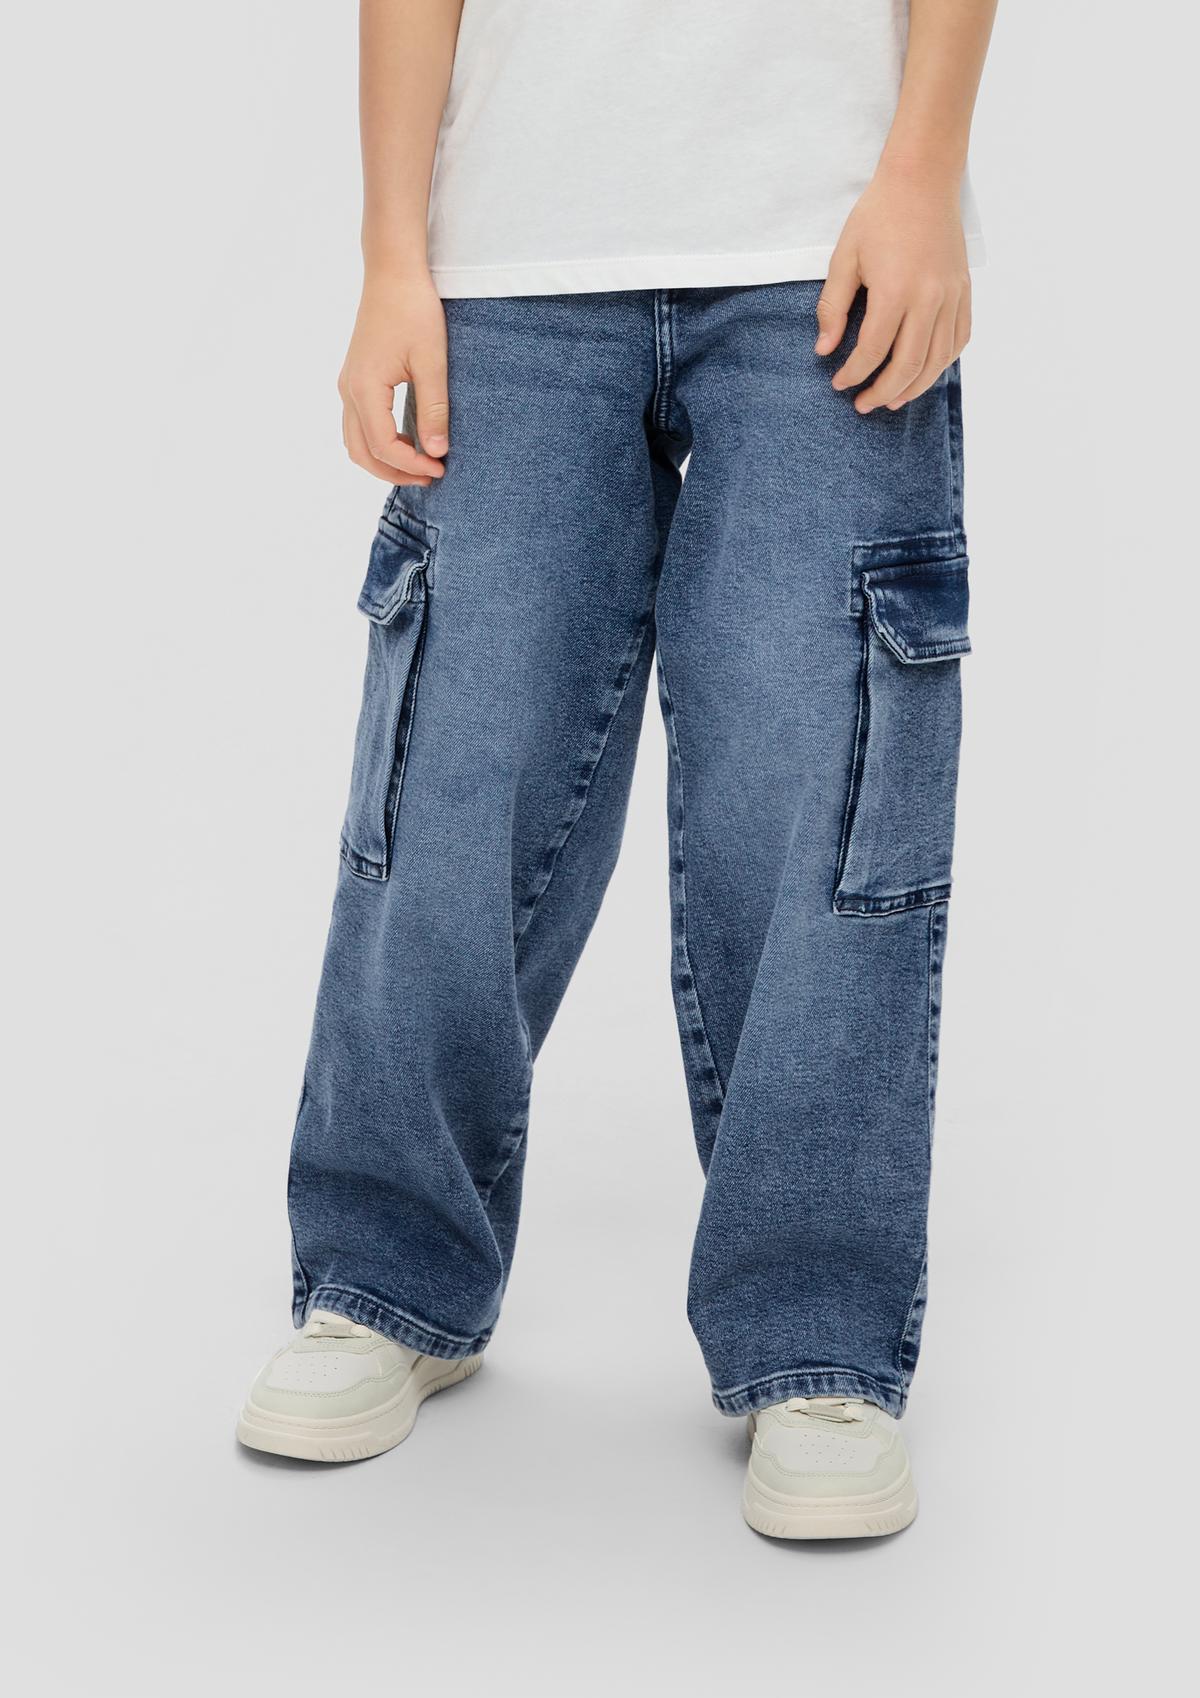 Jeans hlače/kroj Regular Fit/Mid Rise/ozke hlačnice